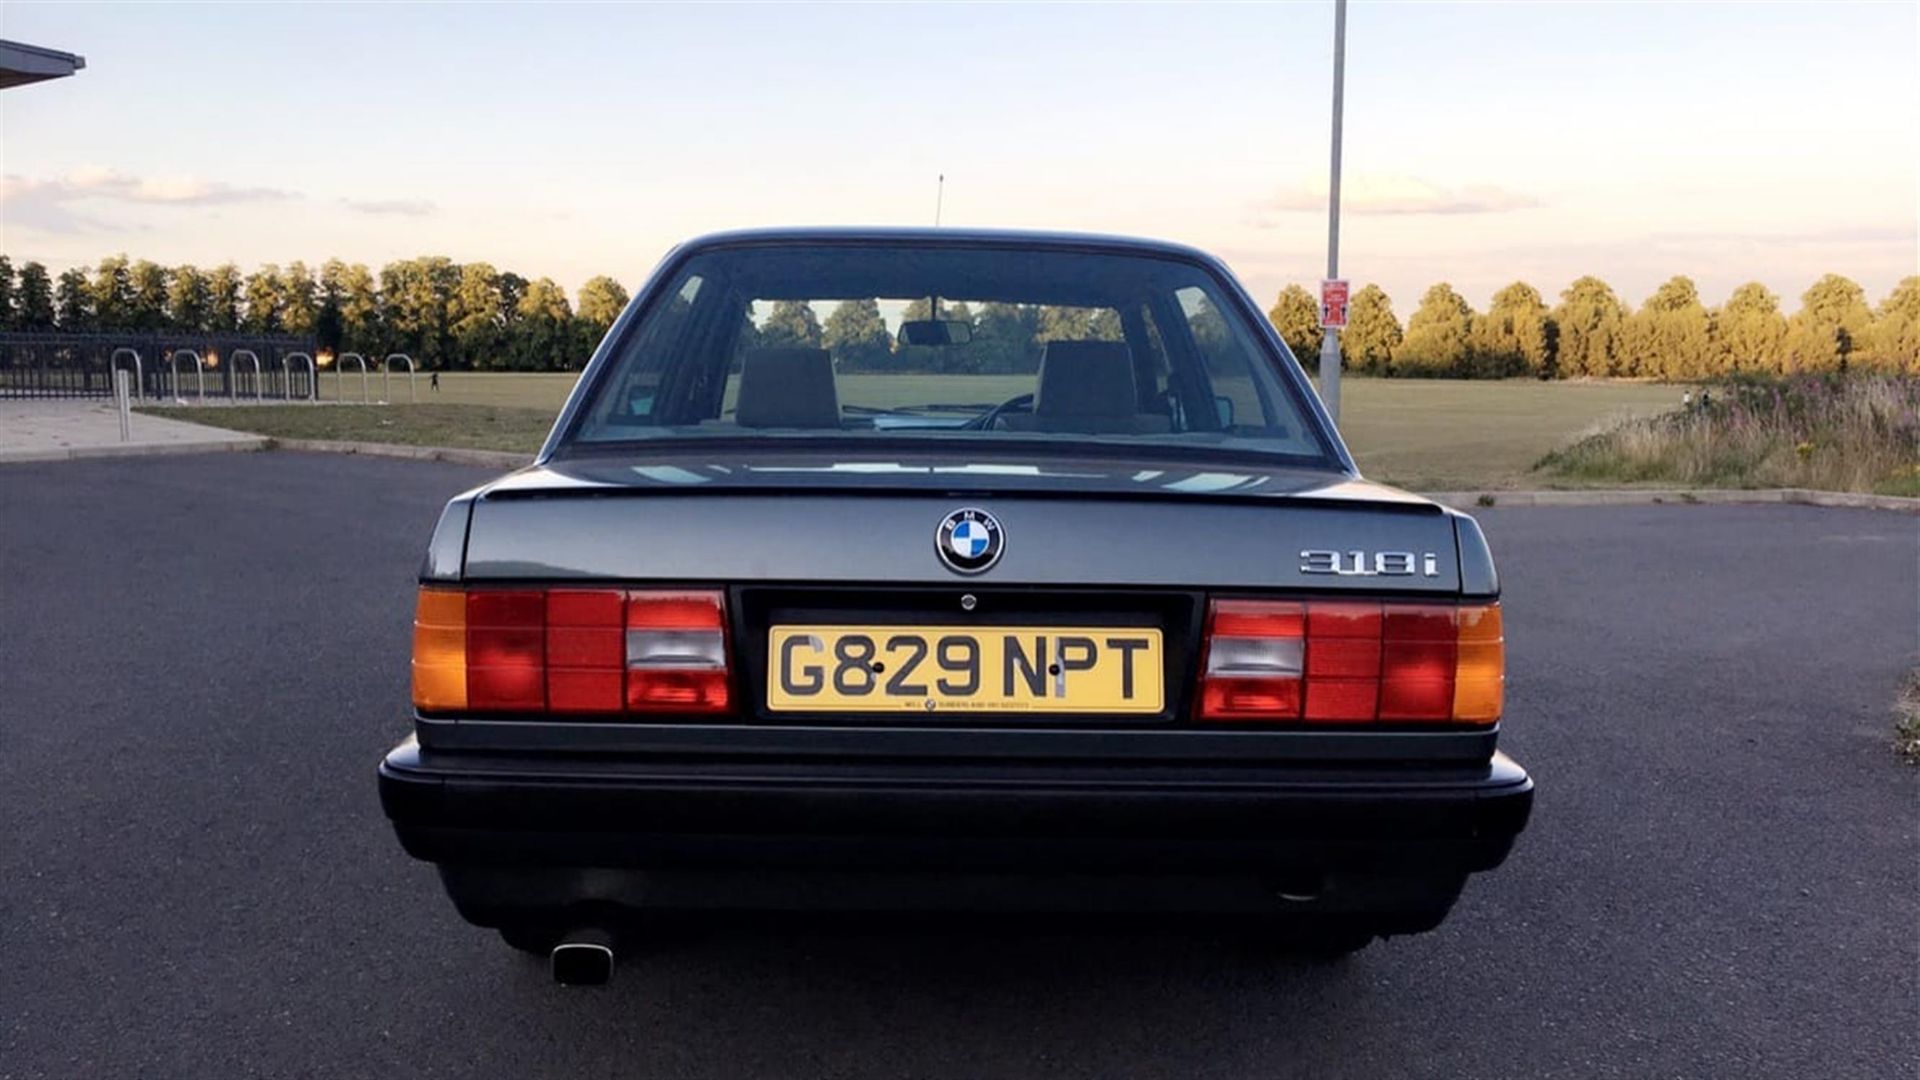 1990 BMW 318i (E30) Automatic - Image 6 of 10